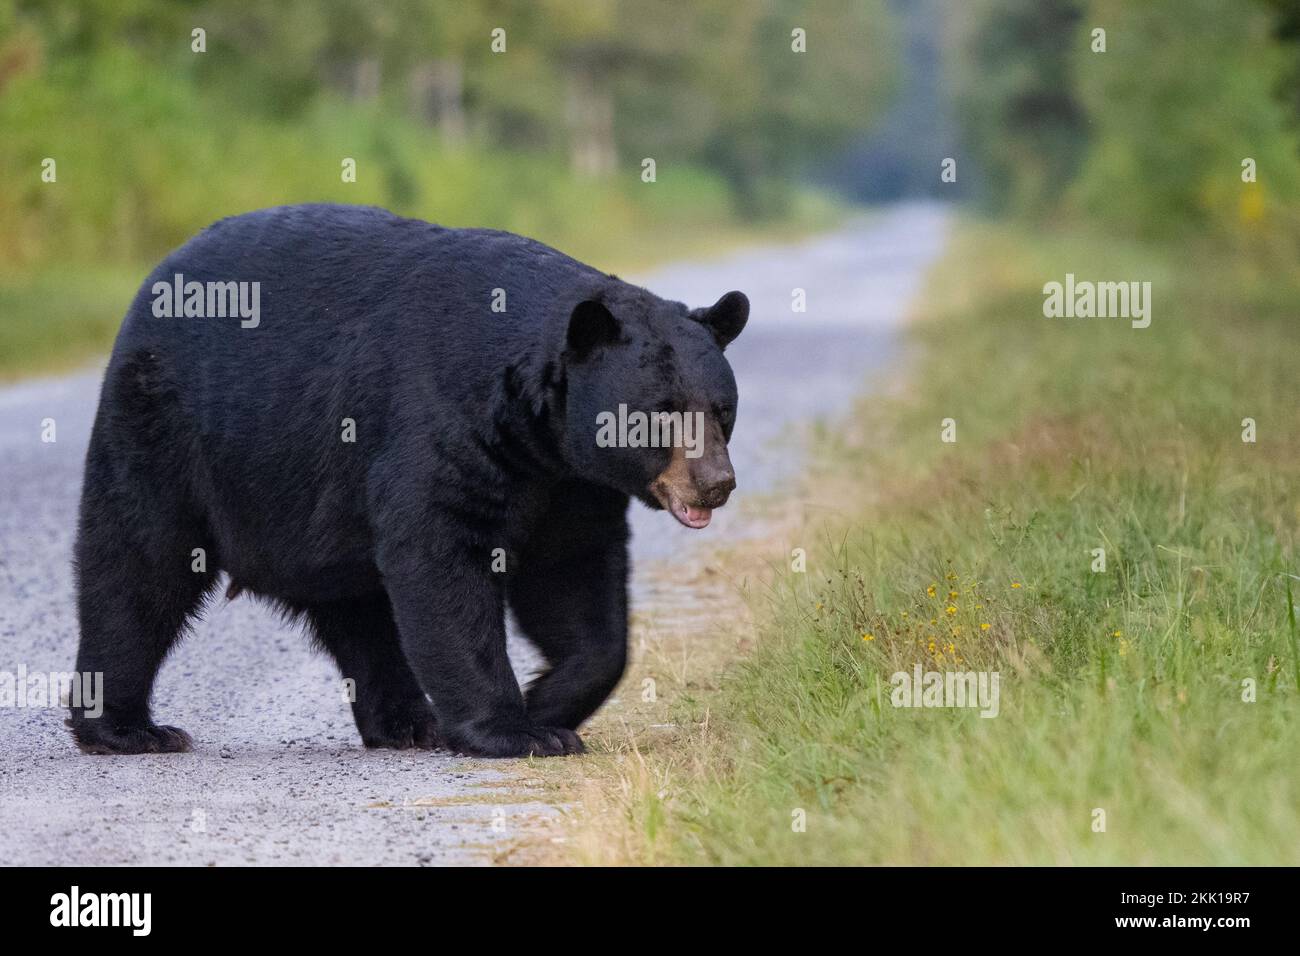 American Black Bear (Ursus americanus) crossing gravel road Stock Photo